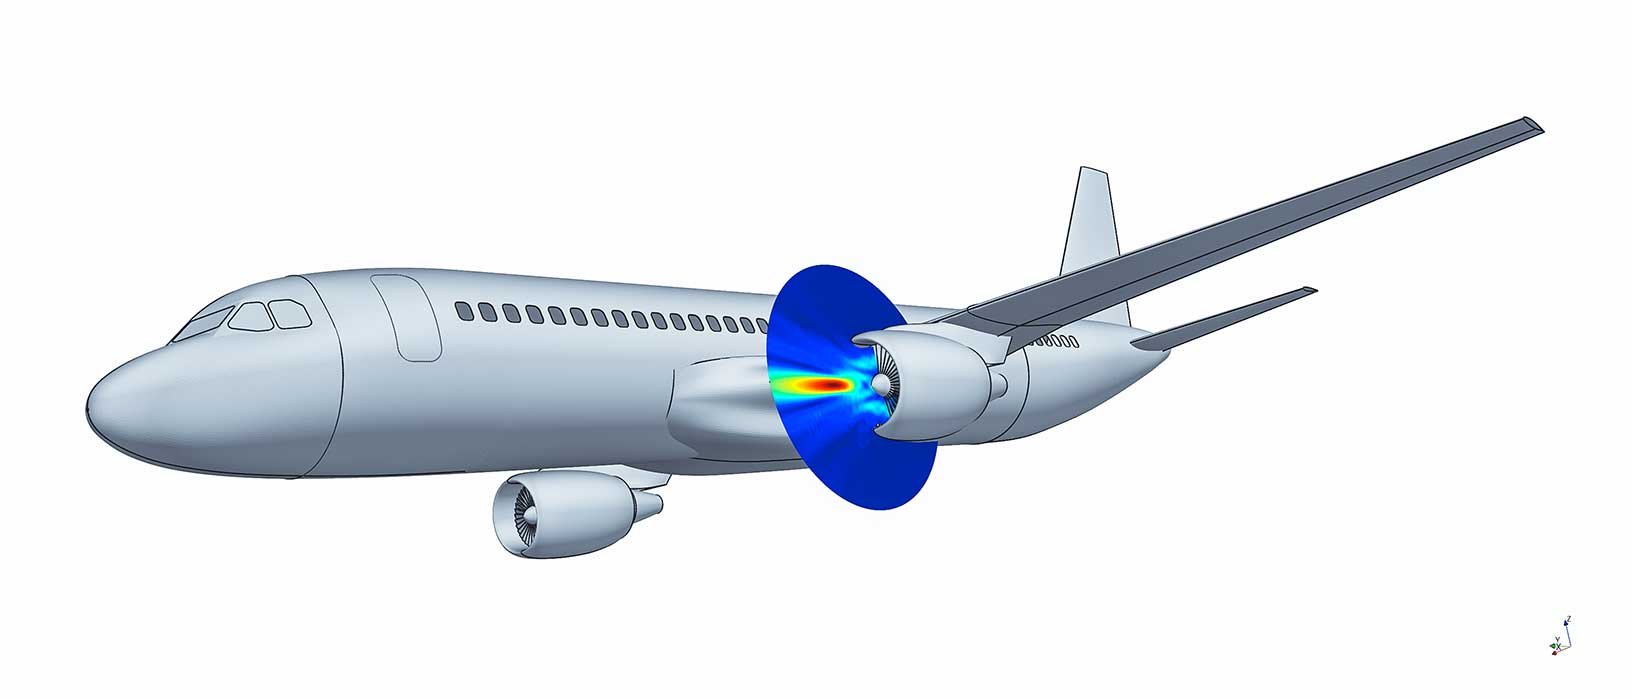 Simulazione acustica del rumore dei motori degli aerei